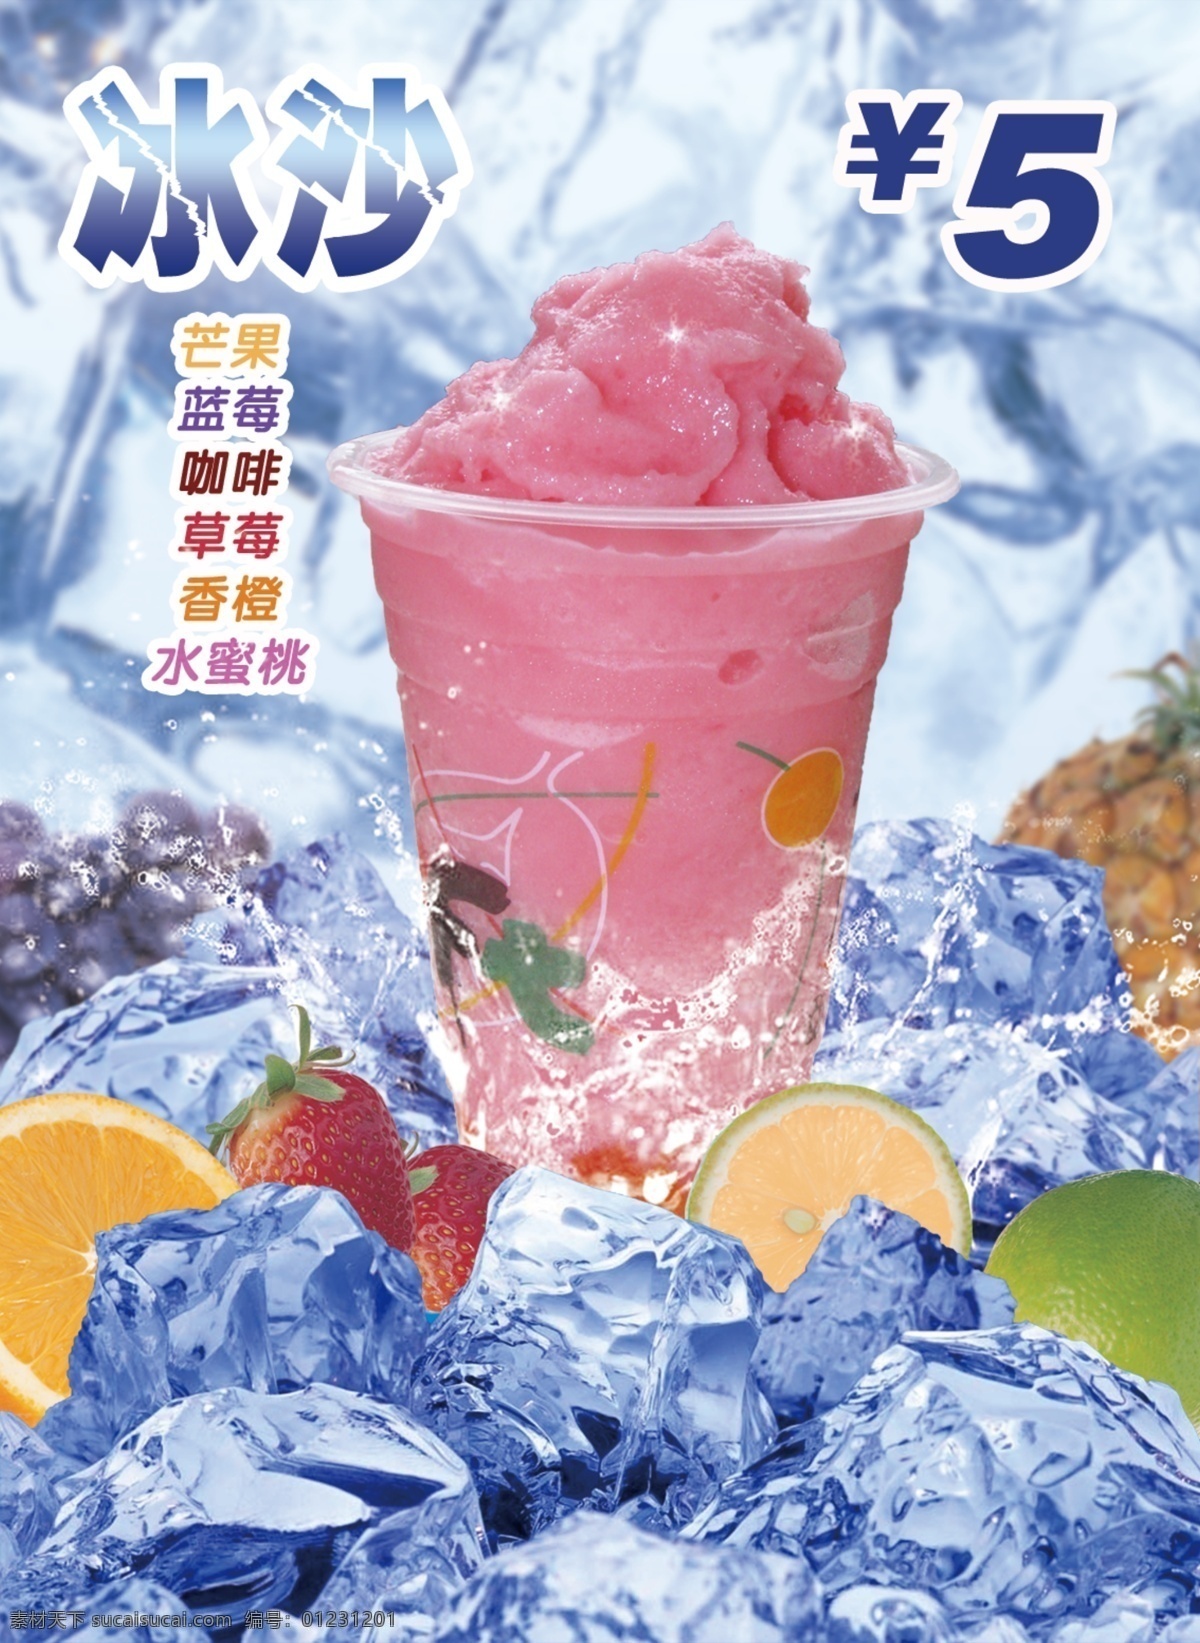 冰块 广告设计模板 蓝色 奶茶图片 沙冰 沙冰海报 沙冰图片 沙 冰 海报 模板下载 草莓沙冰 香橙 源文件 矢量图 日常生活